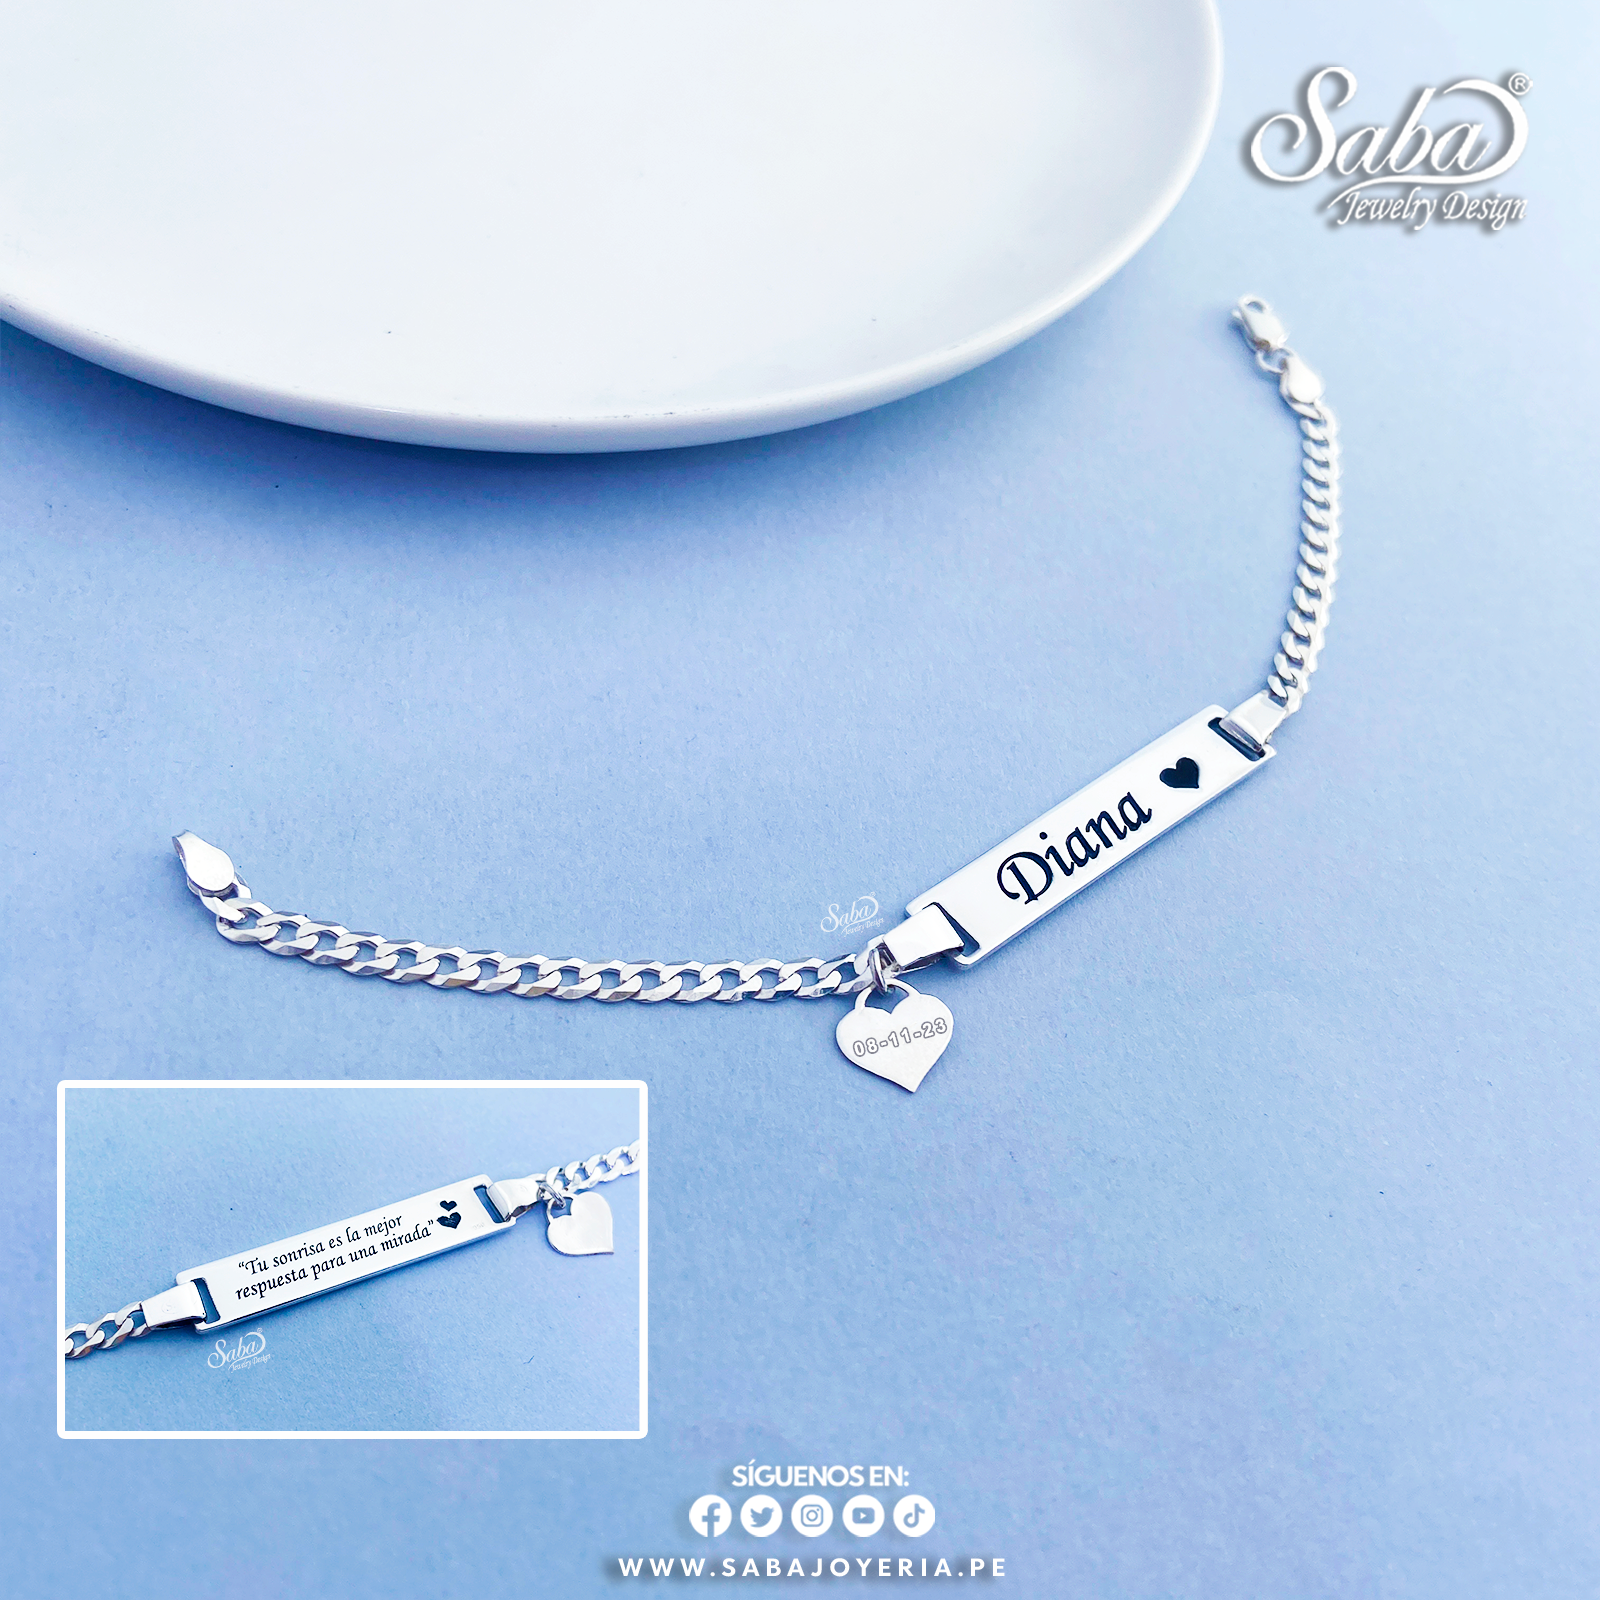 Nombre Personalizado – Saba Jewelry Design